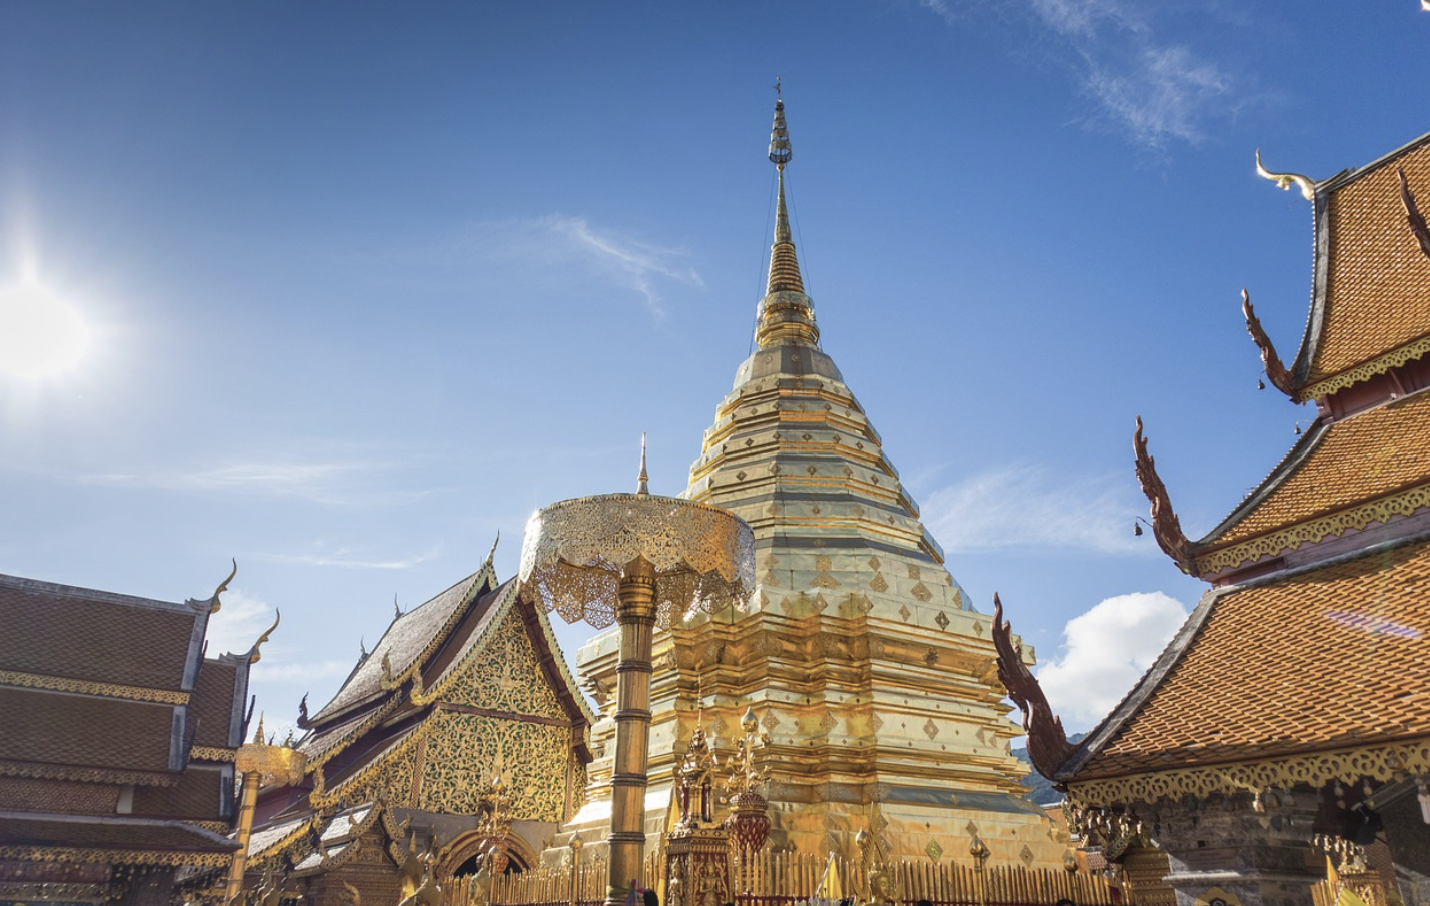 Panduan Destinasi Kota Chiang Mai: Keindahan yang Memukau di Thailand